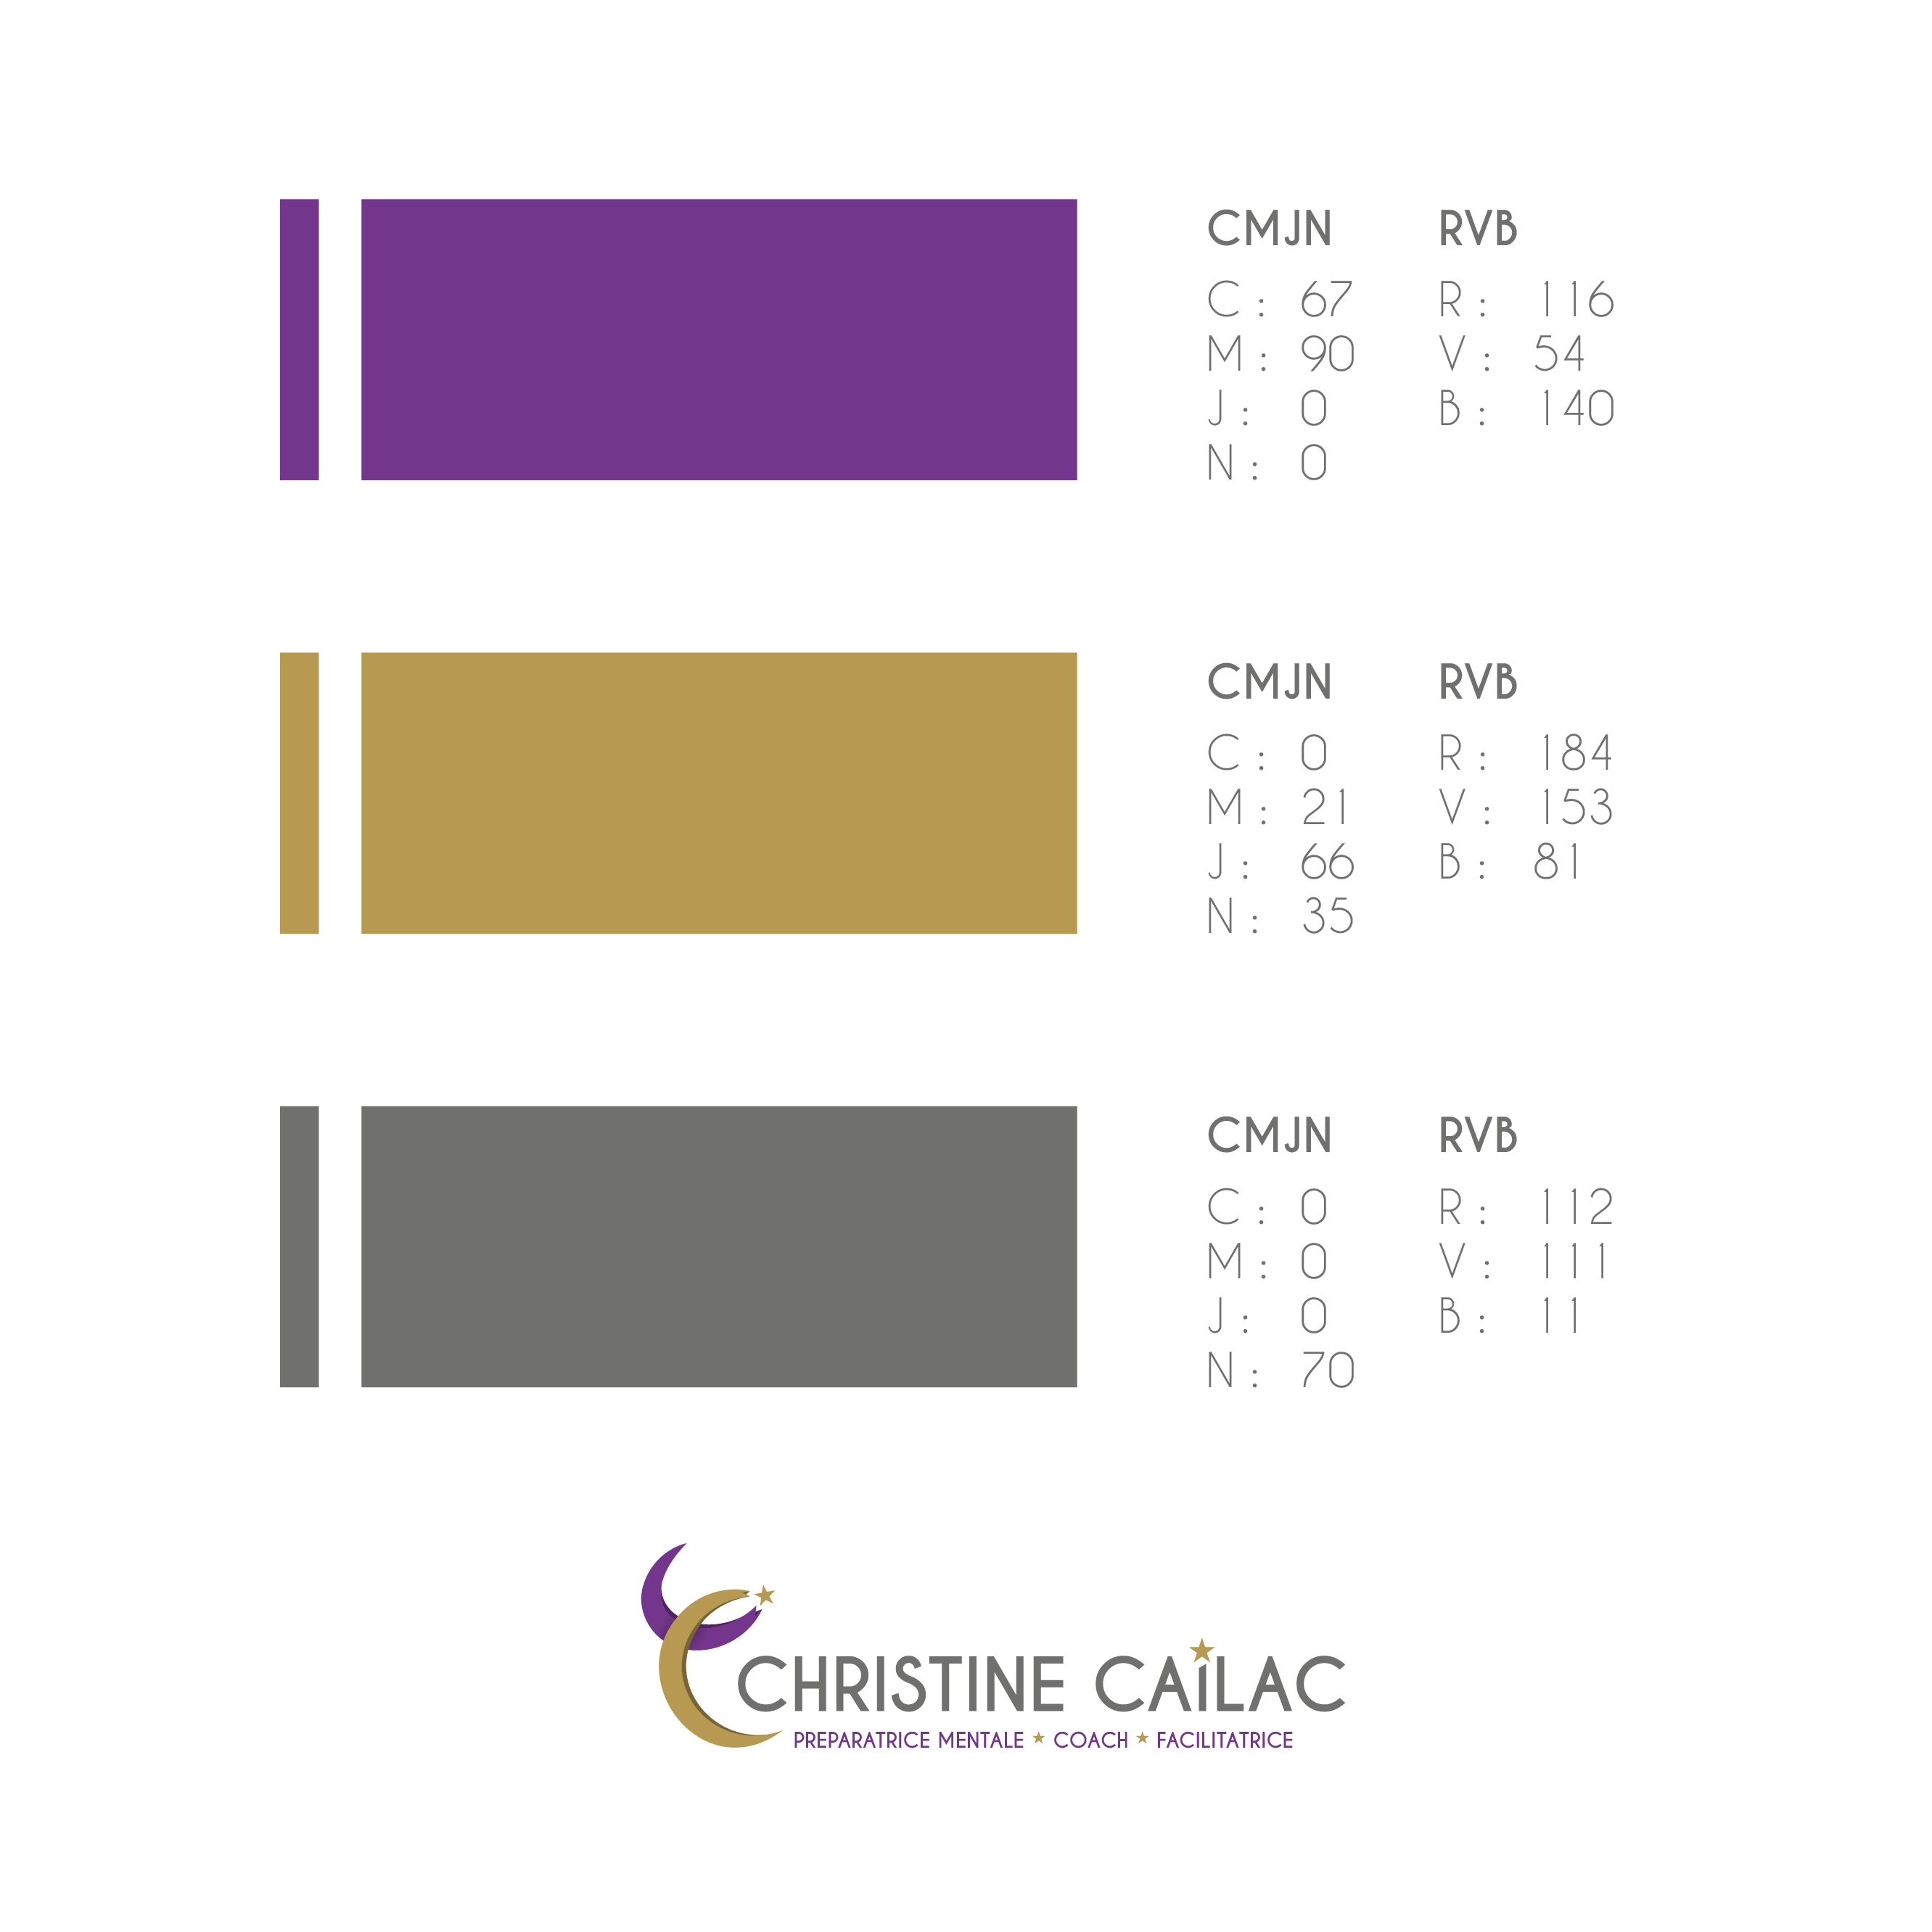 Refonte de l'identité Christine Cailac